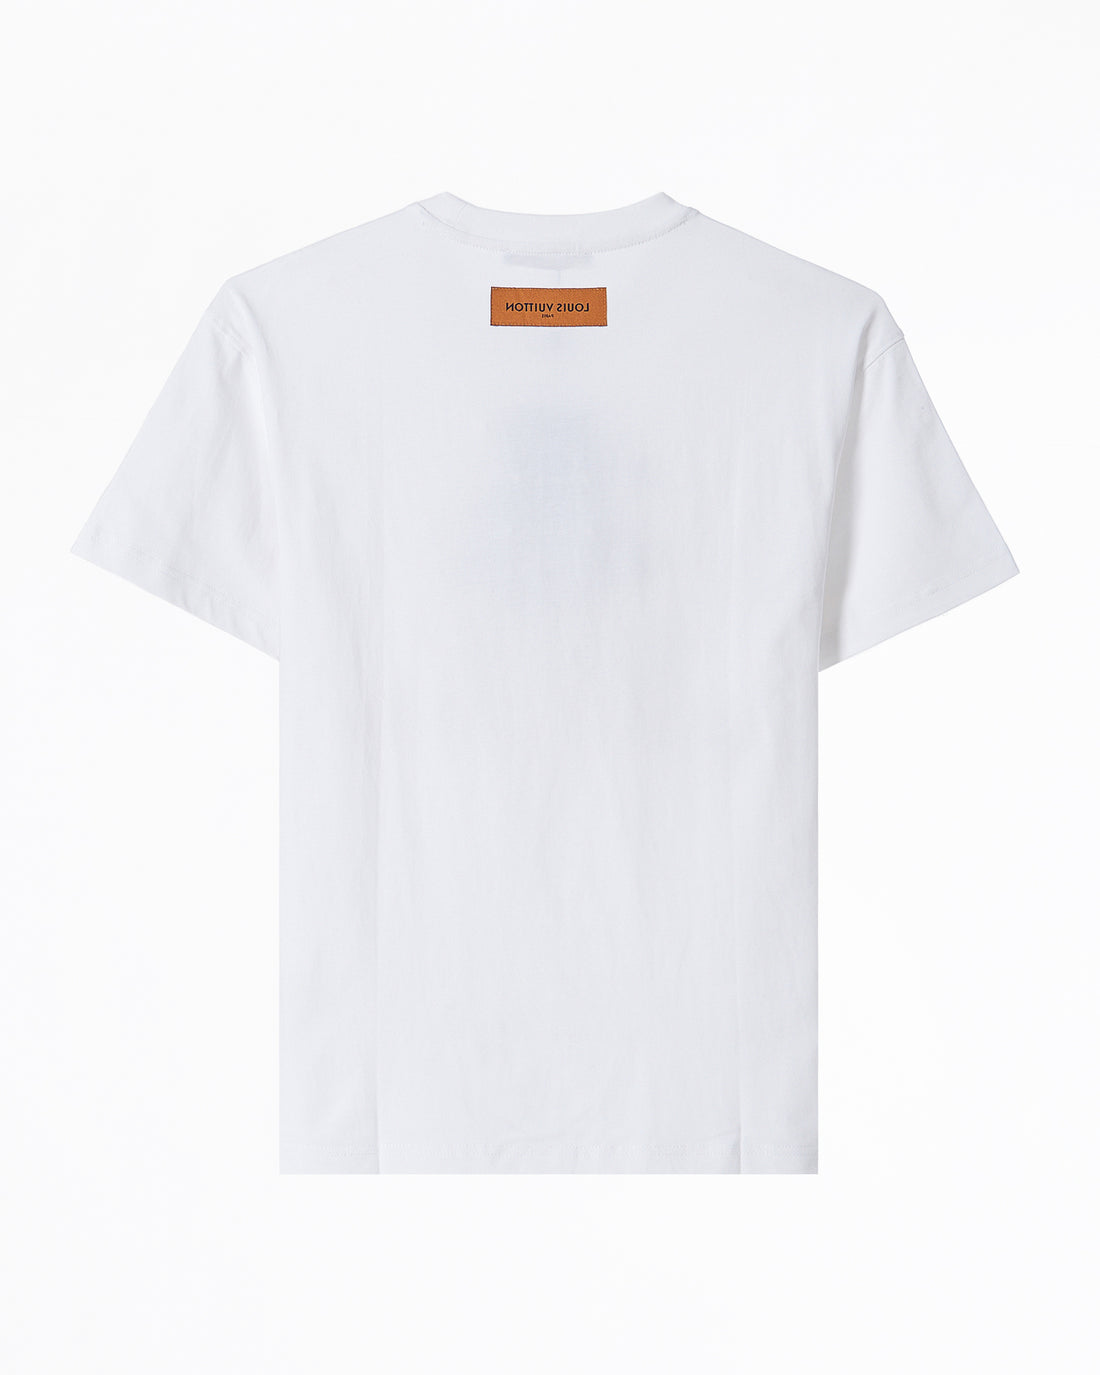 LV Eye Embroidered Men White T-Shirt 55.90